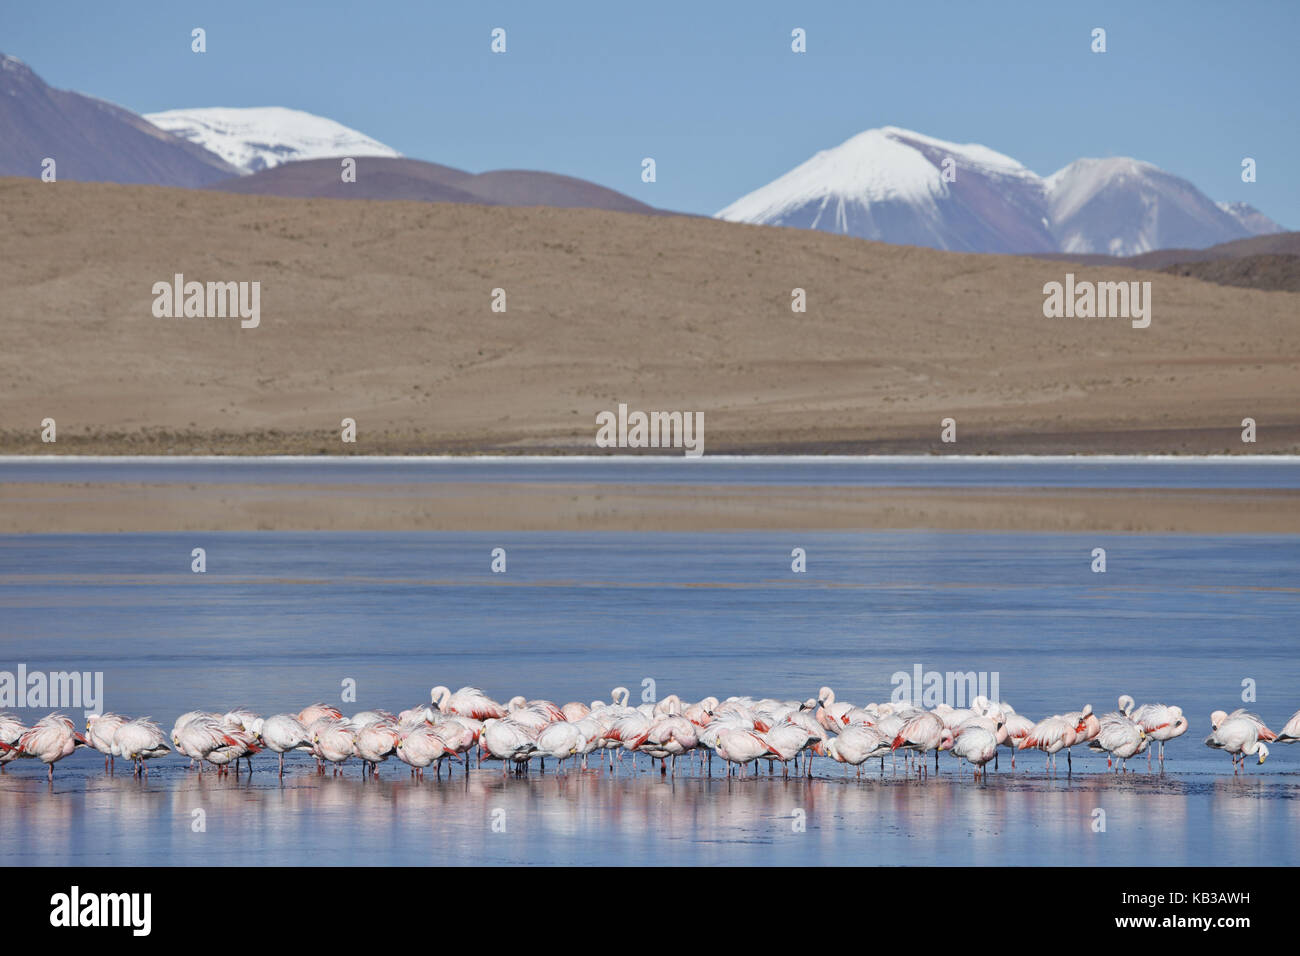 Bolivia, Los Lipez, Laguna Canapa, Andes flamingos, Stock Photo